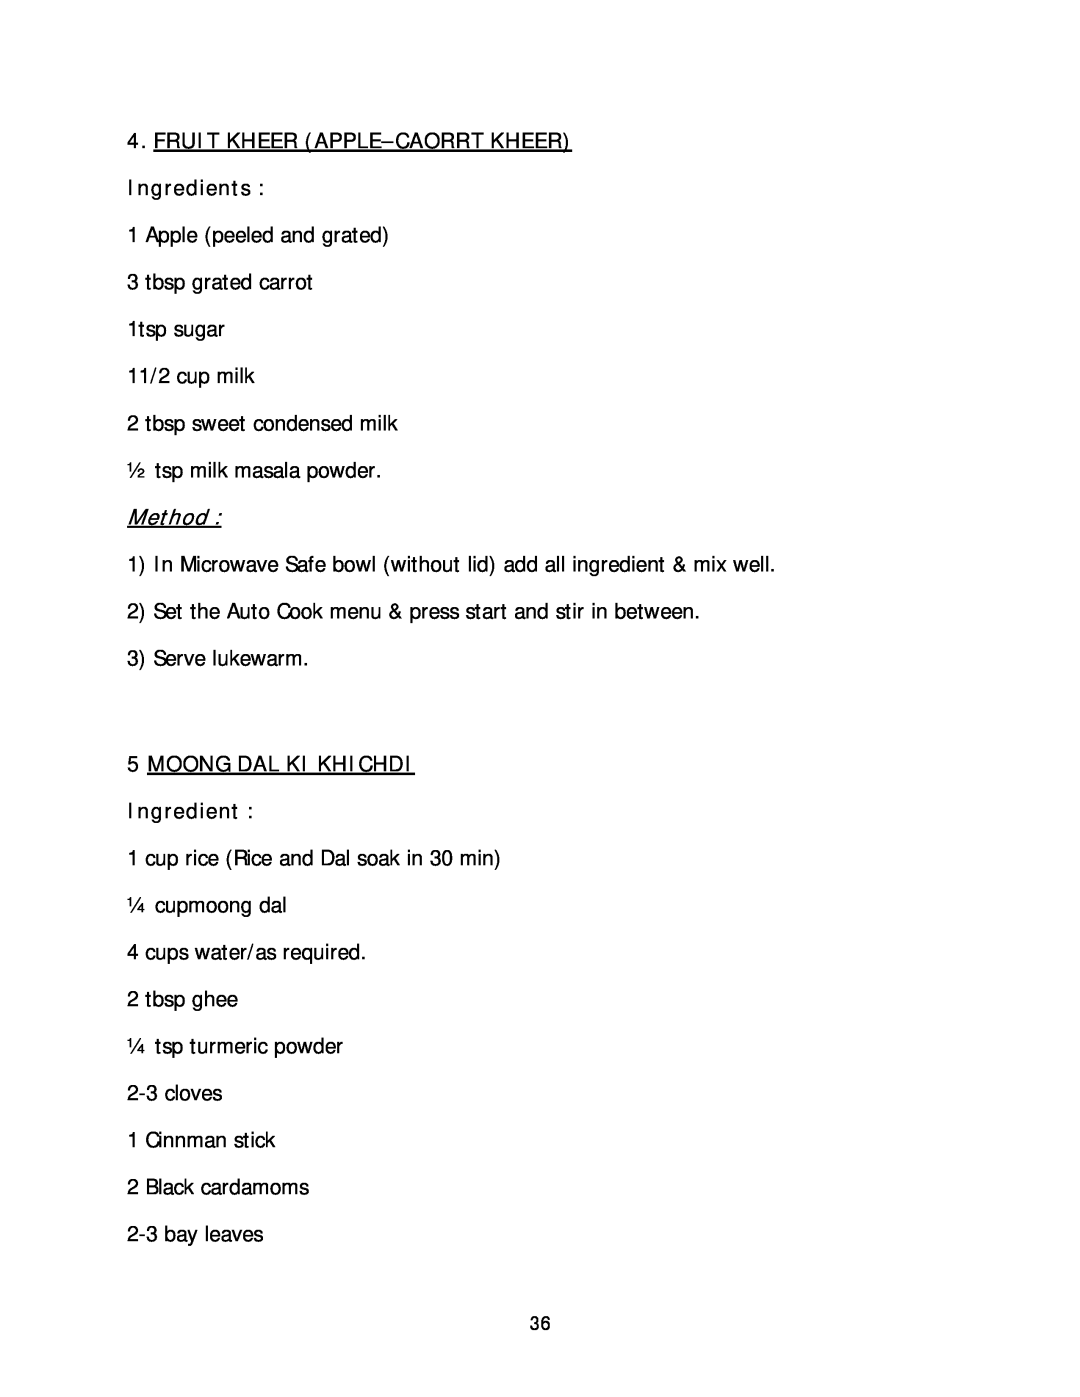 Haier HIL 2810EGCB manual FRUIT KHEER APPLE-CAORRT KHEER Ingredients, Method, MOONG DAL KI KHICHDI Ingredient 